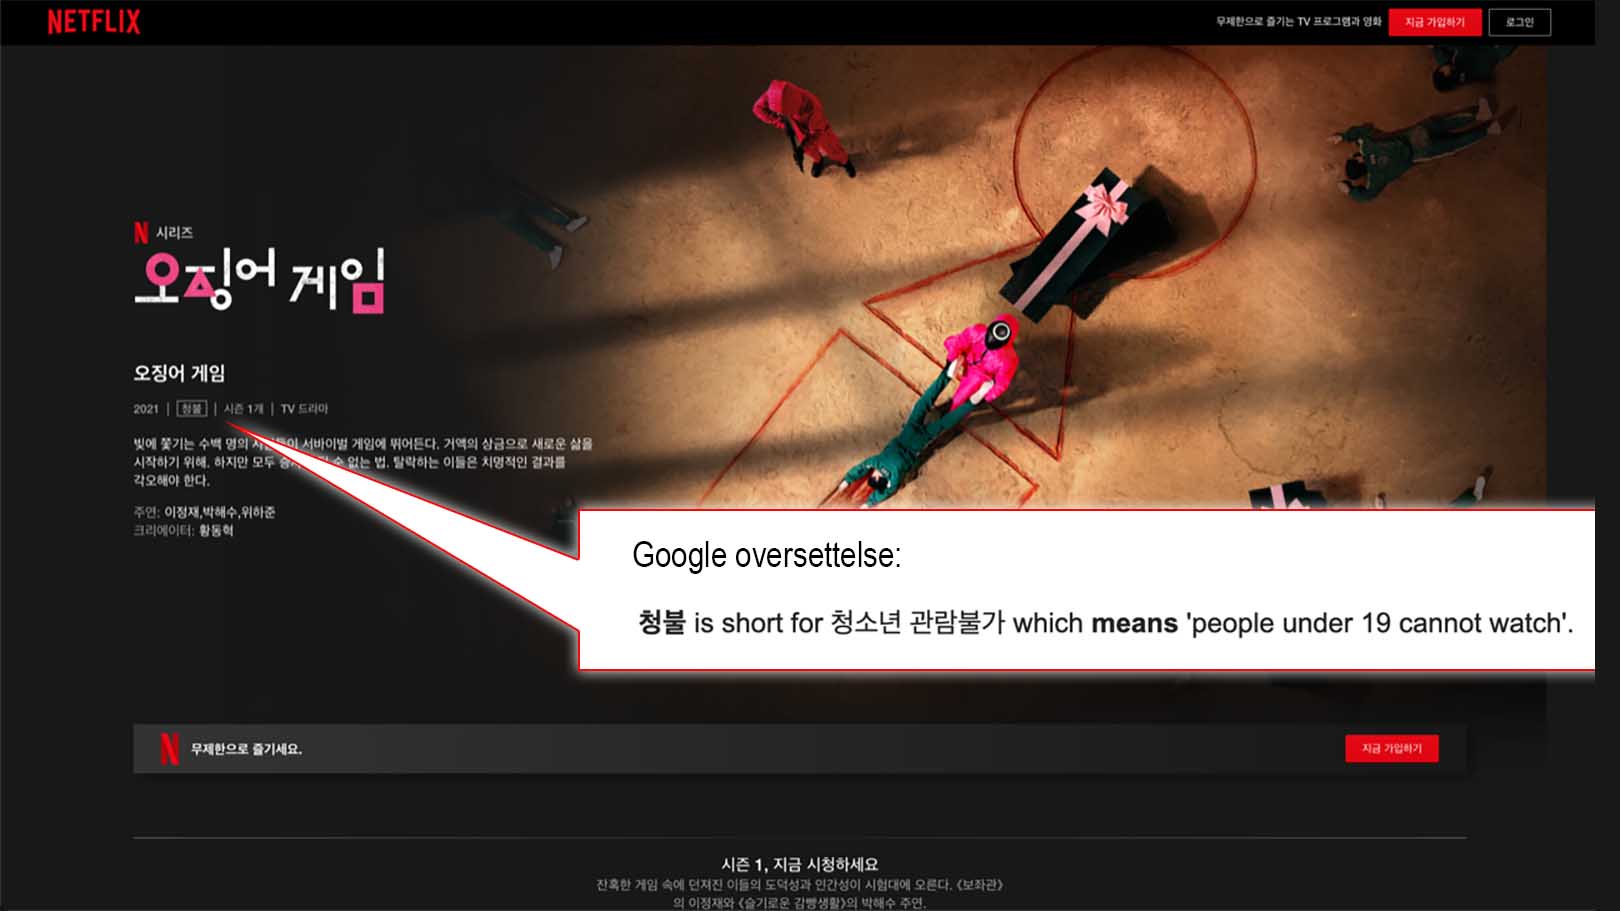 Foto: Skjermdump og montasje av Netflix i Korea og Google oversettelse.